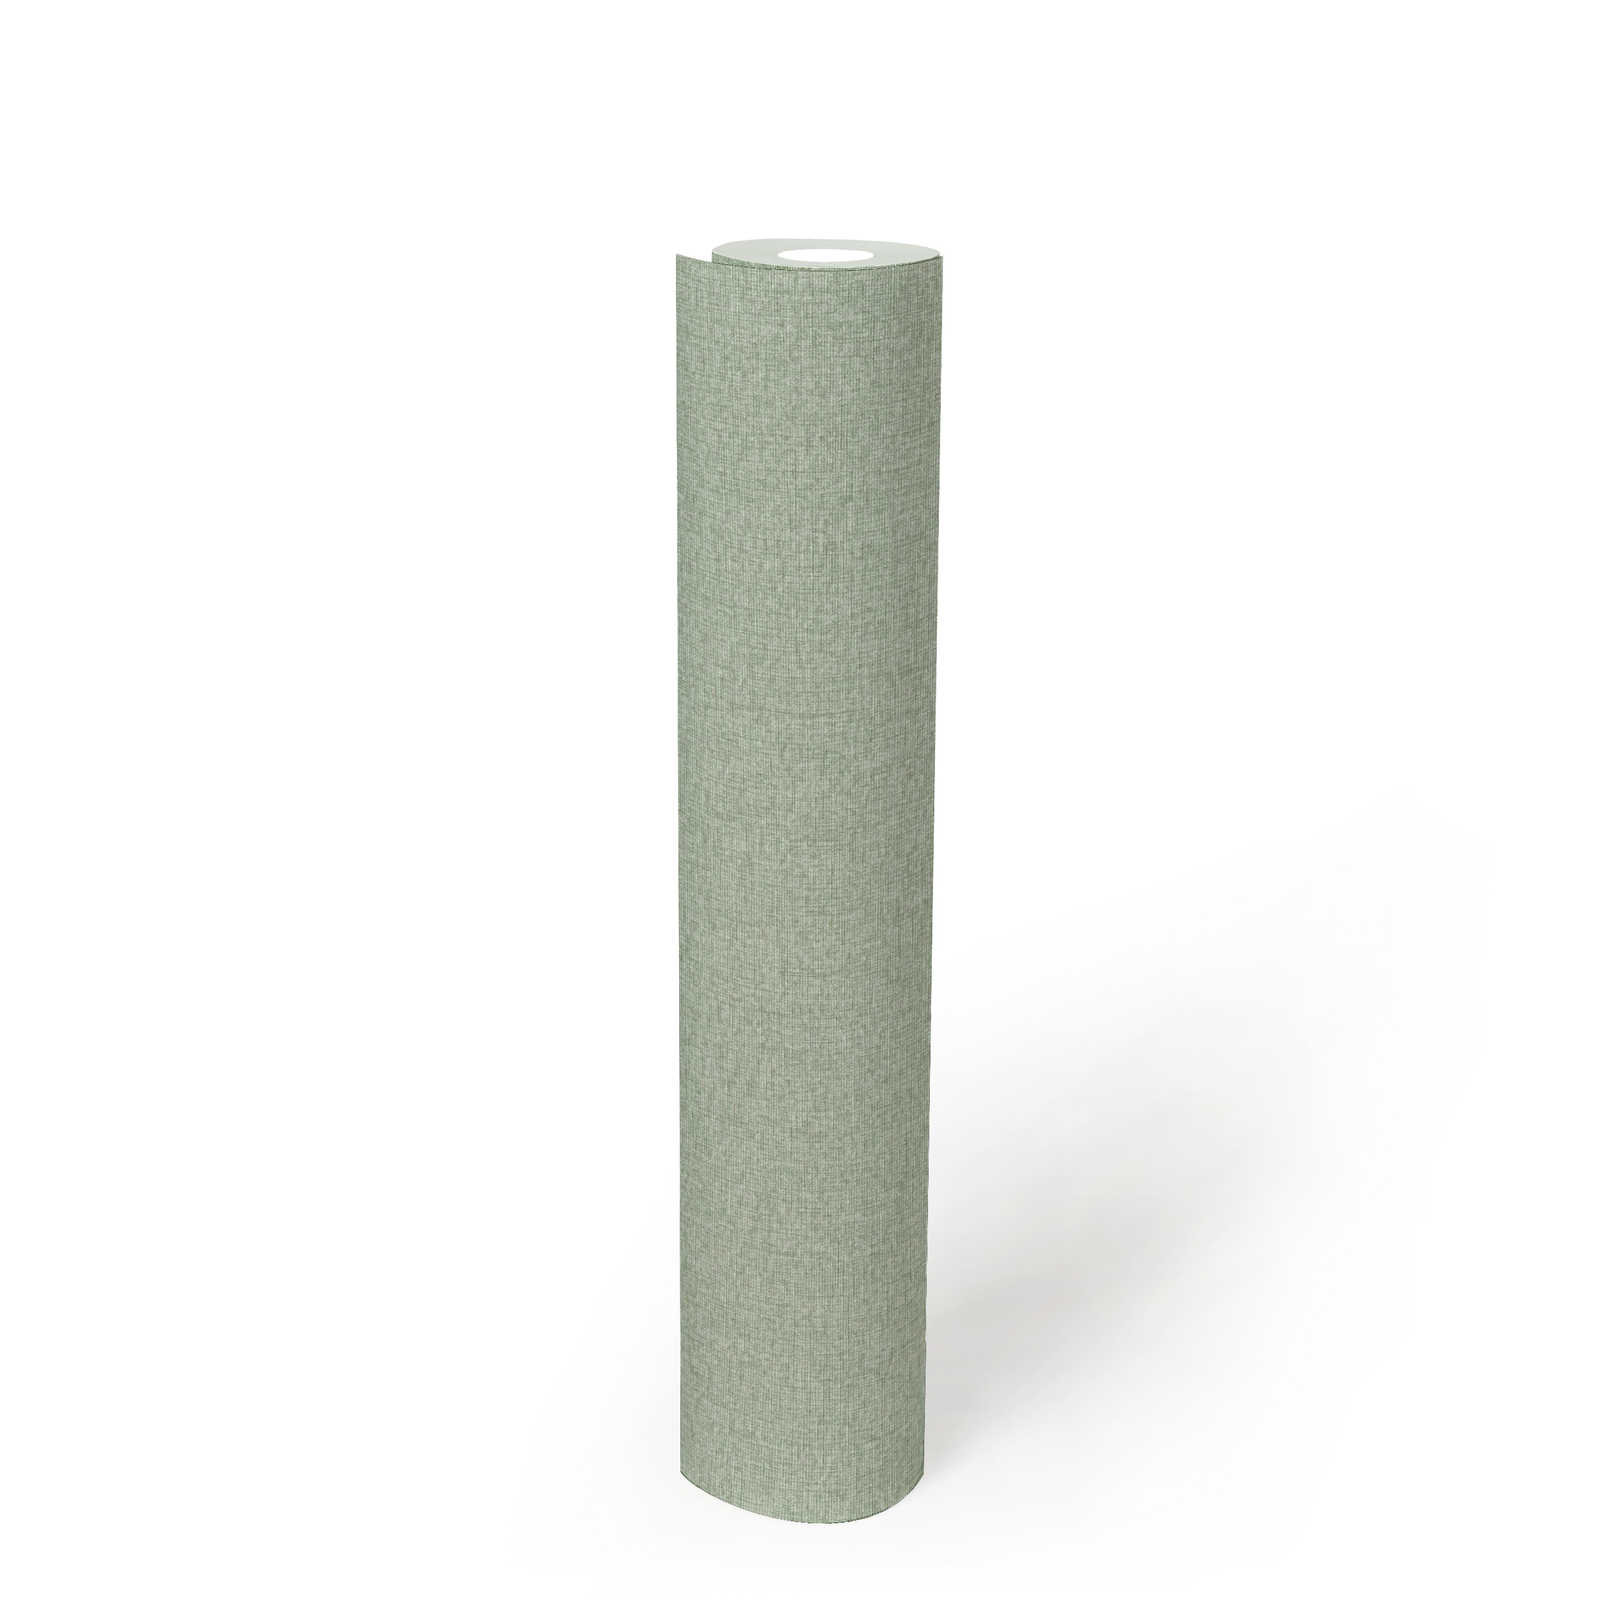             Effen behang in weefsellook met lichte structuur, mat - groen
        